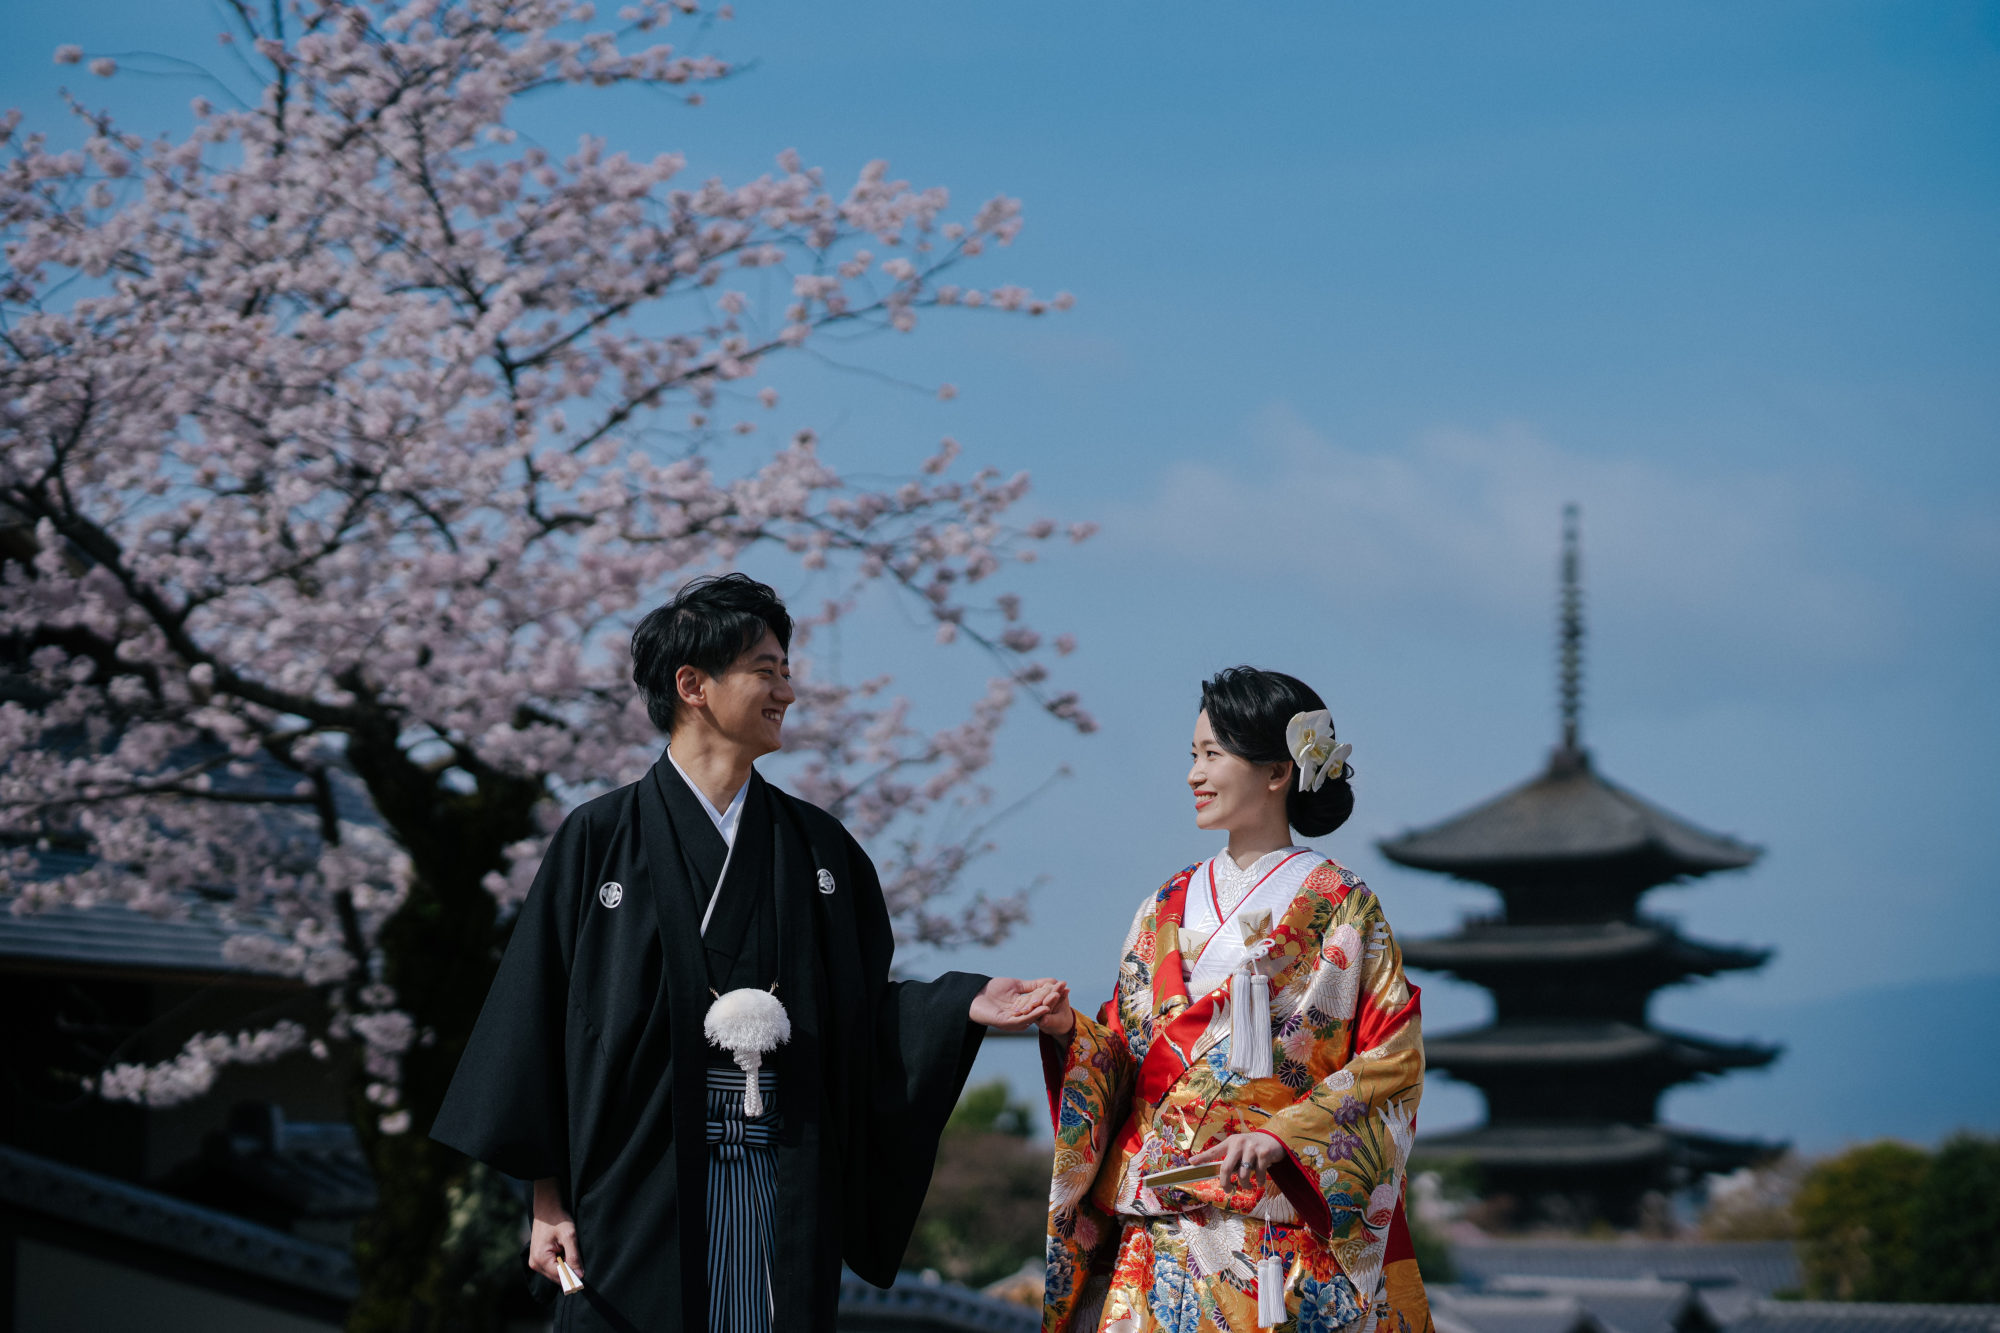 おすすめの八坂で、桜と五重の塔を背景に、和装での前撮りする様子